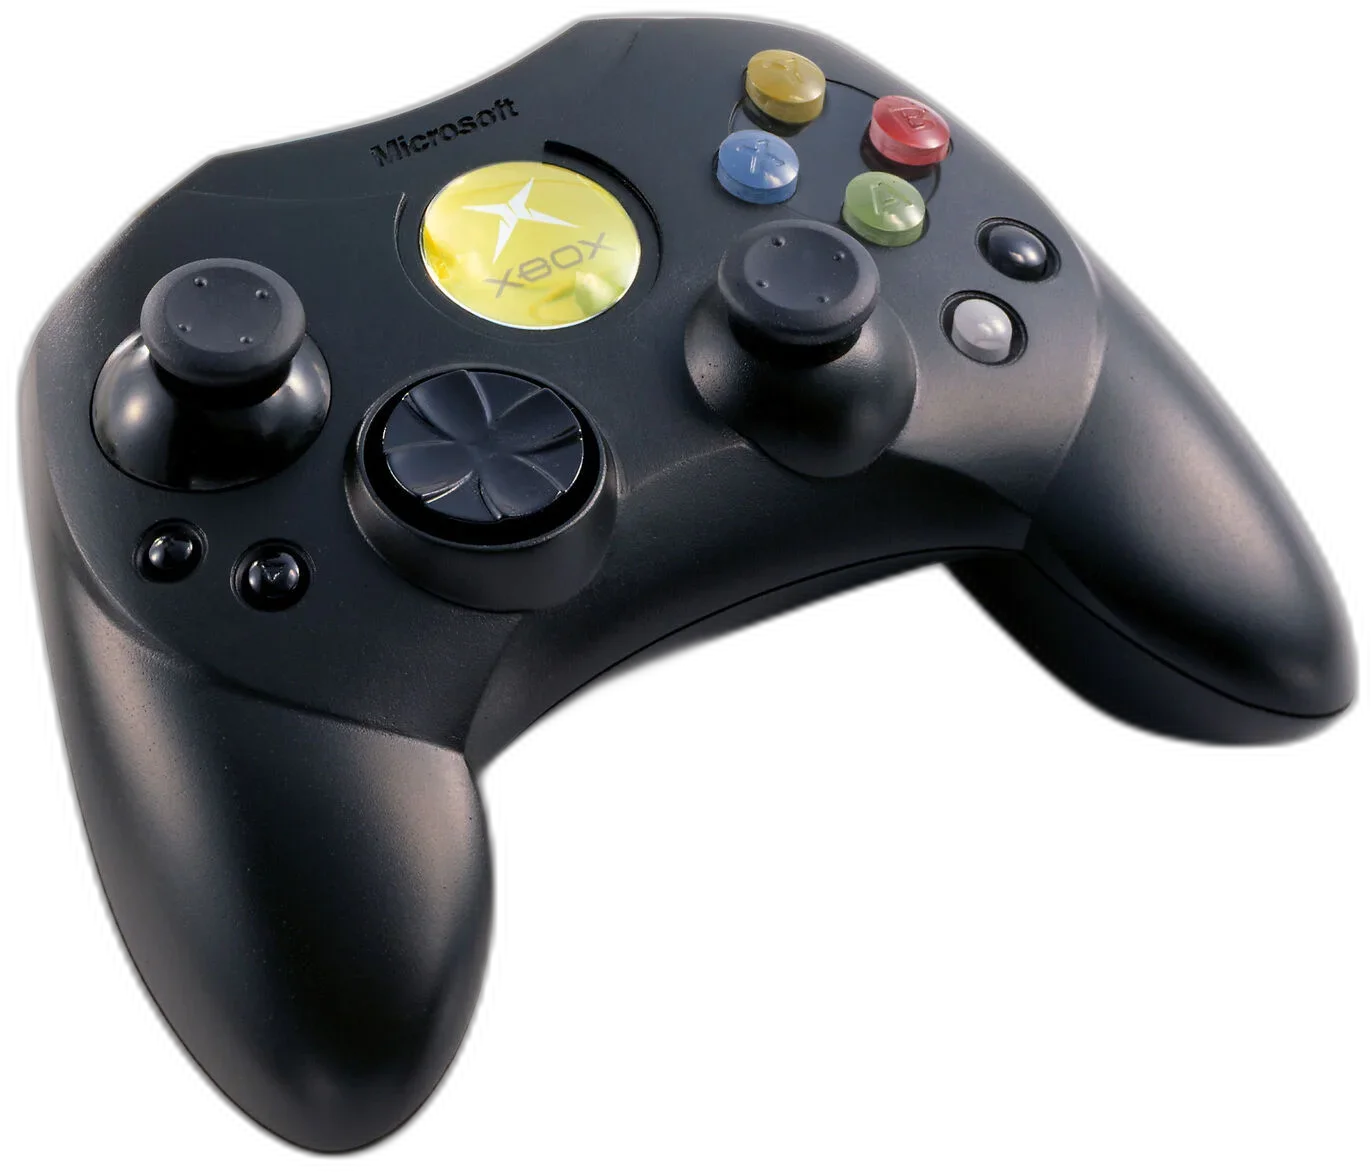  Microsoft Xbox Prototype Controller S [JP]